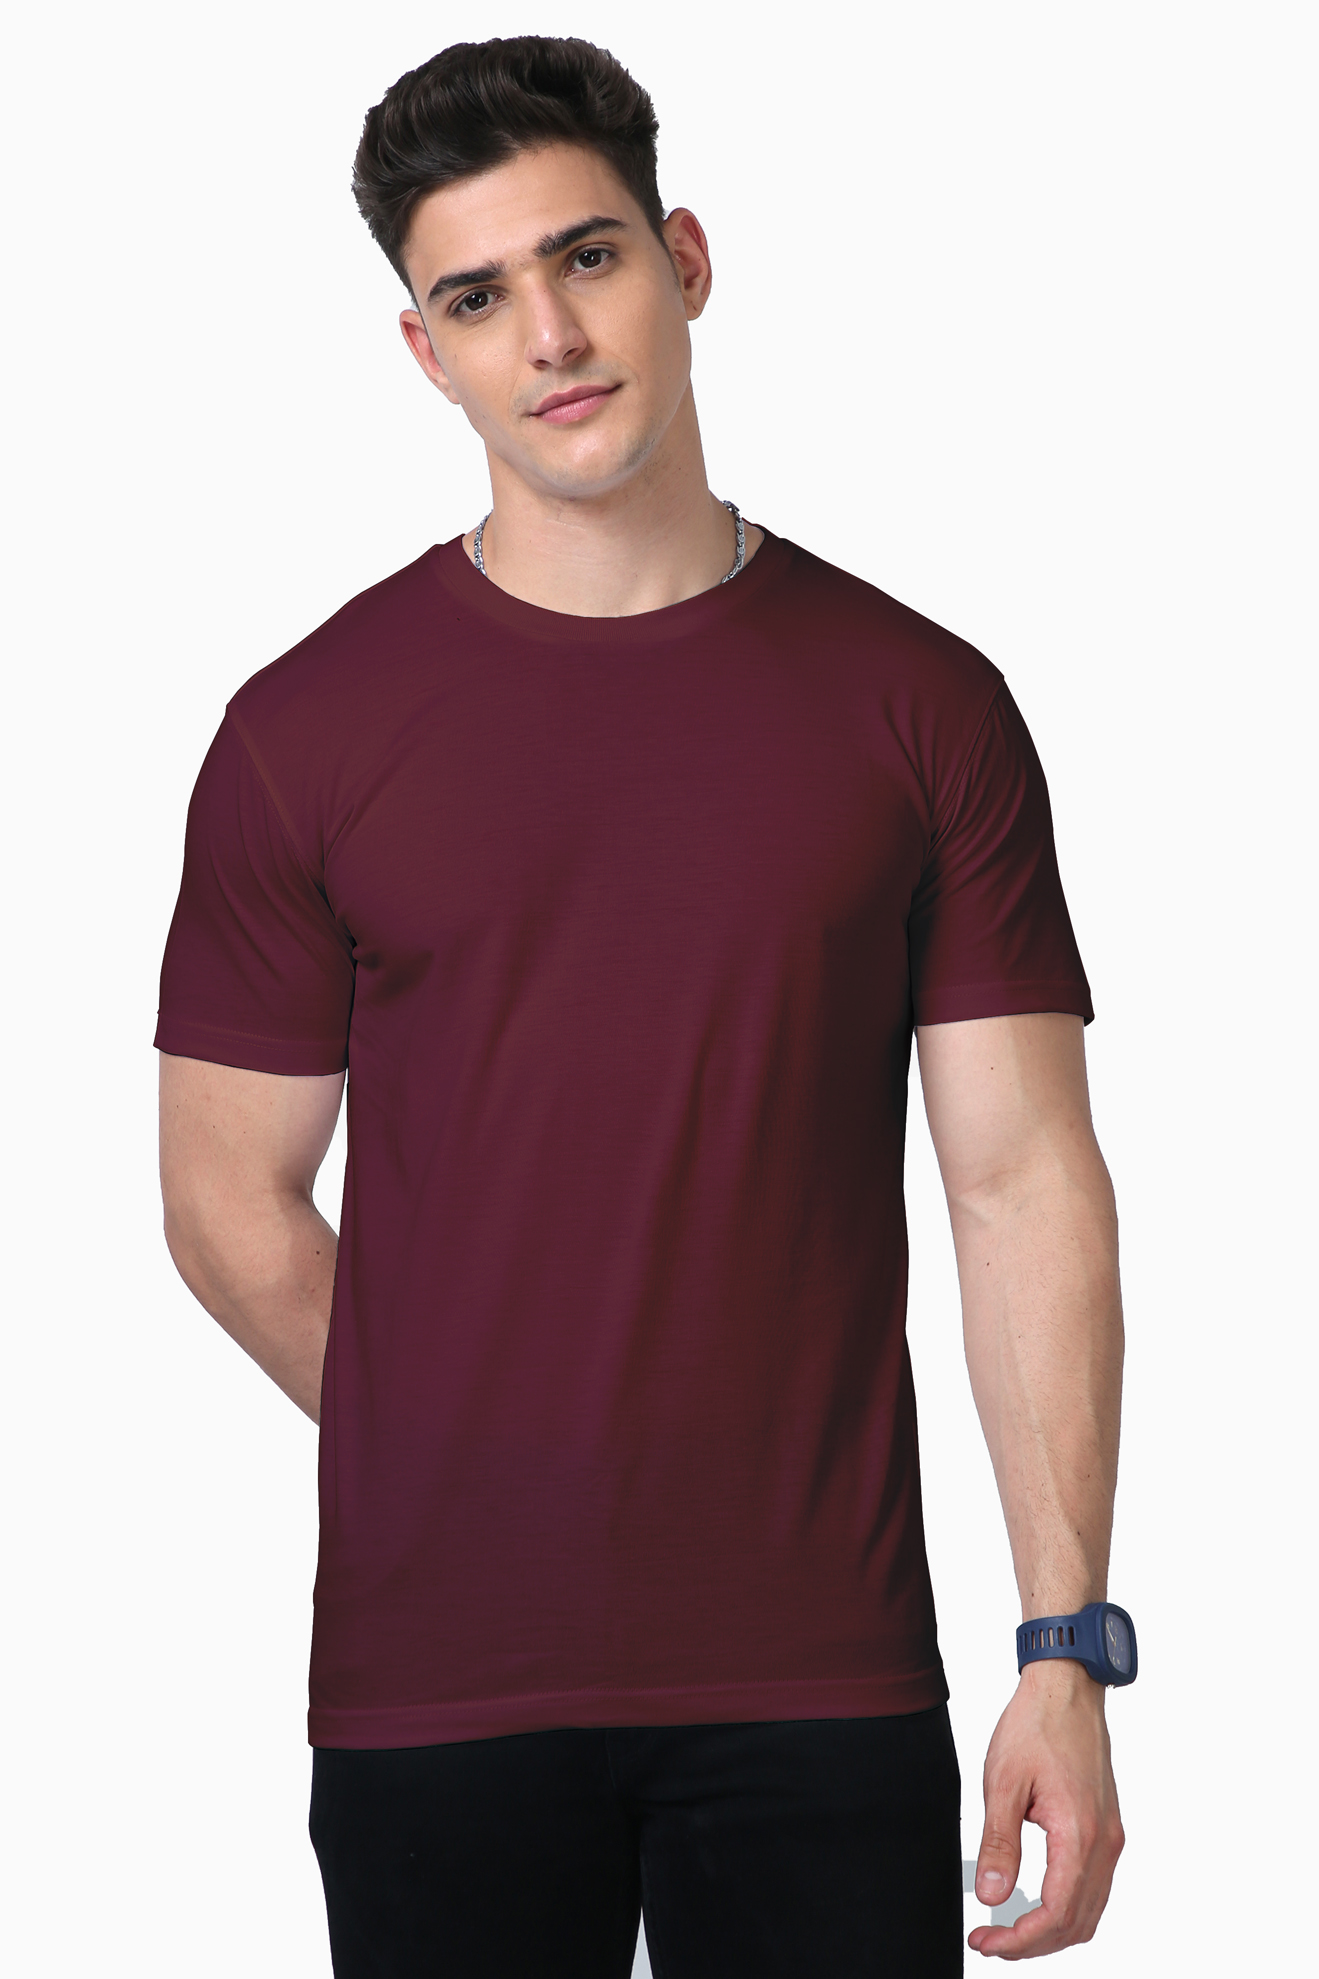 Premium Unisex Supima Cotton T-shirt